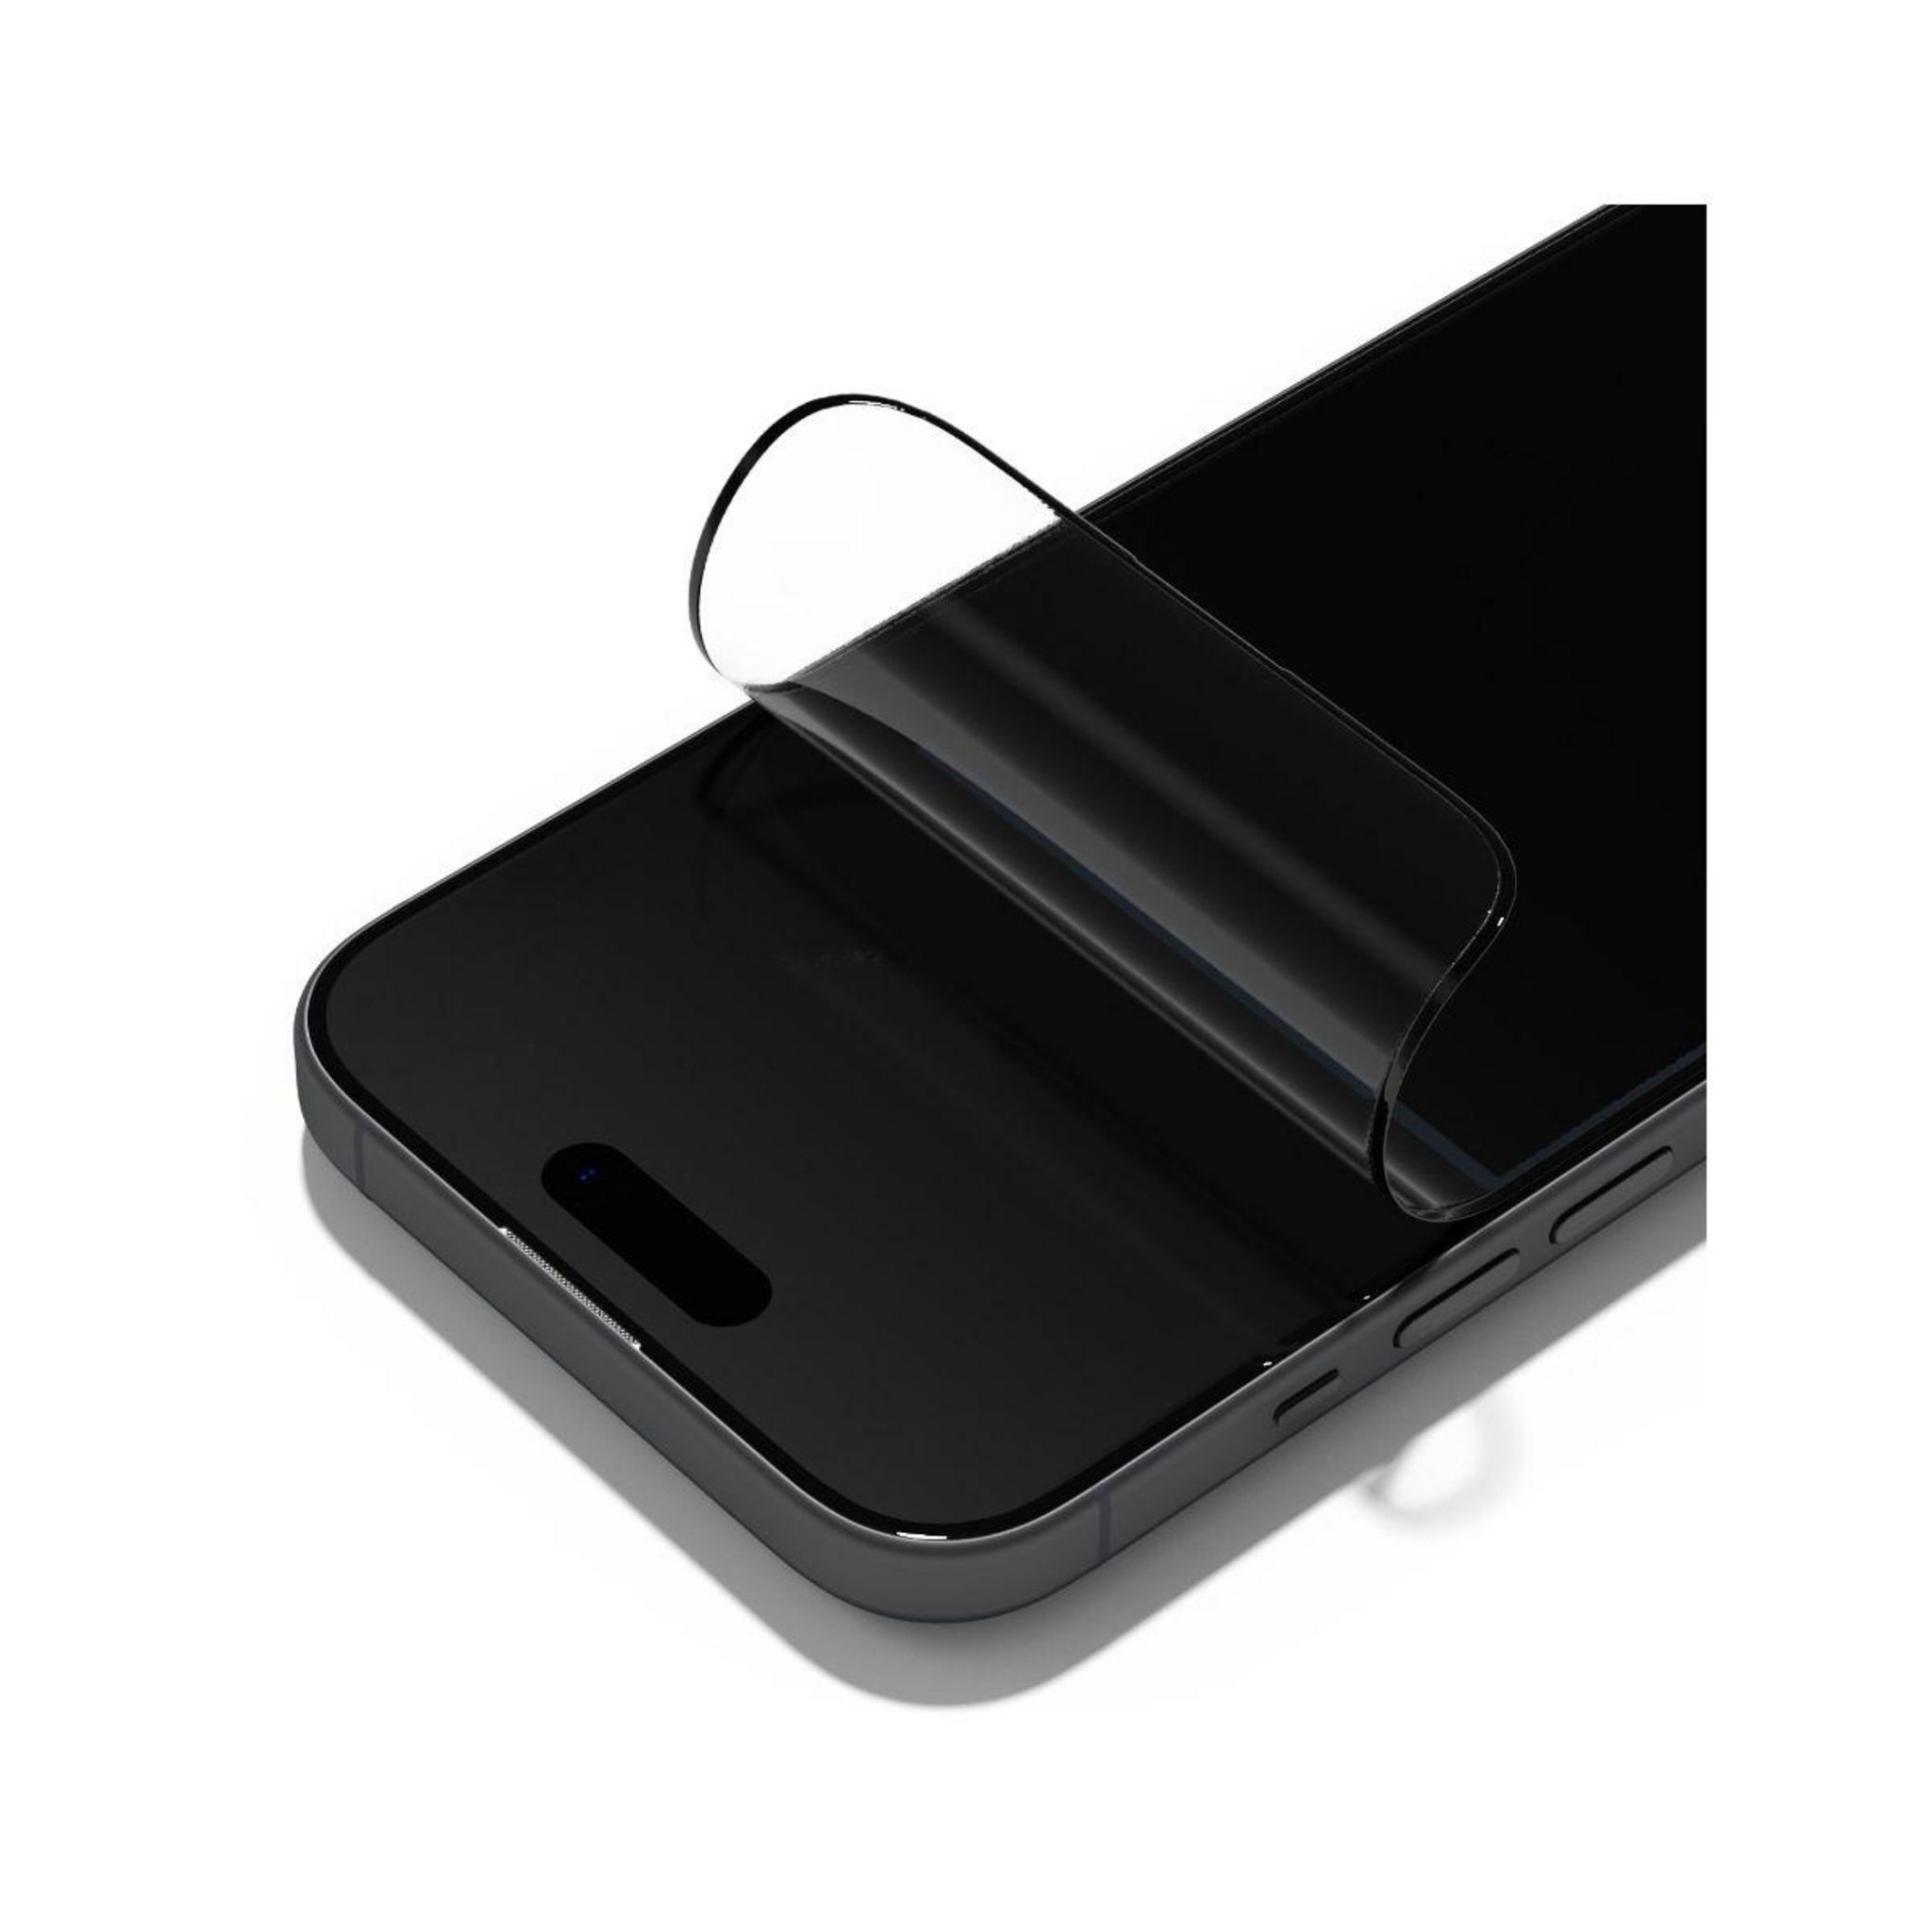 RhinoShield SolidSuit - coque de protection pour iPhone 14 Pro Max - noir  Pas Cher